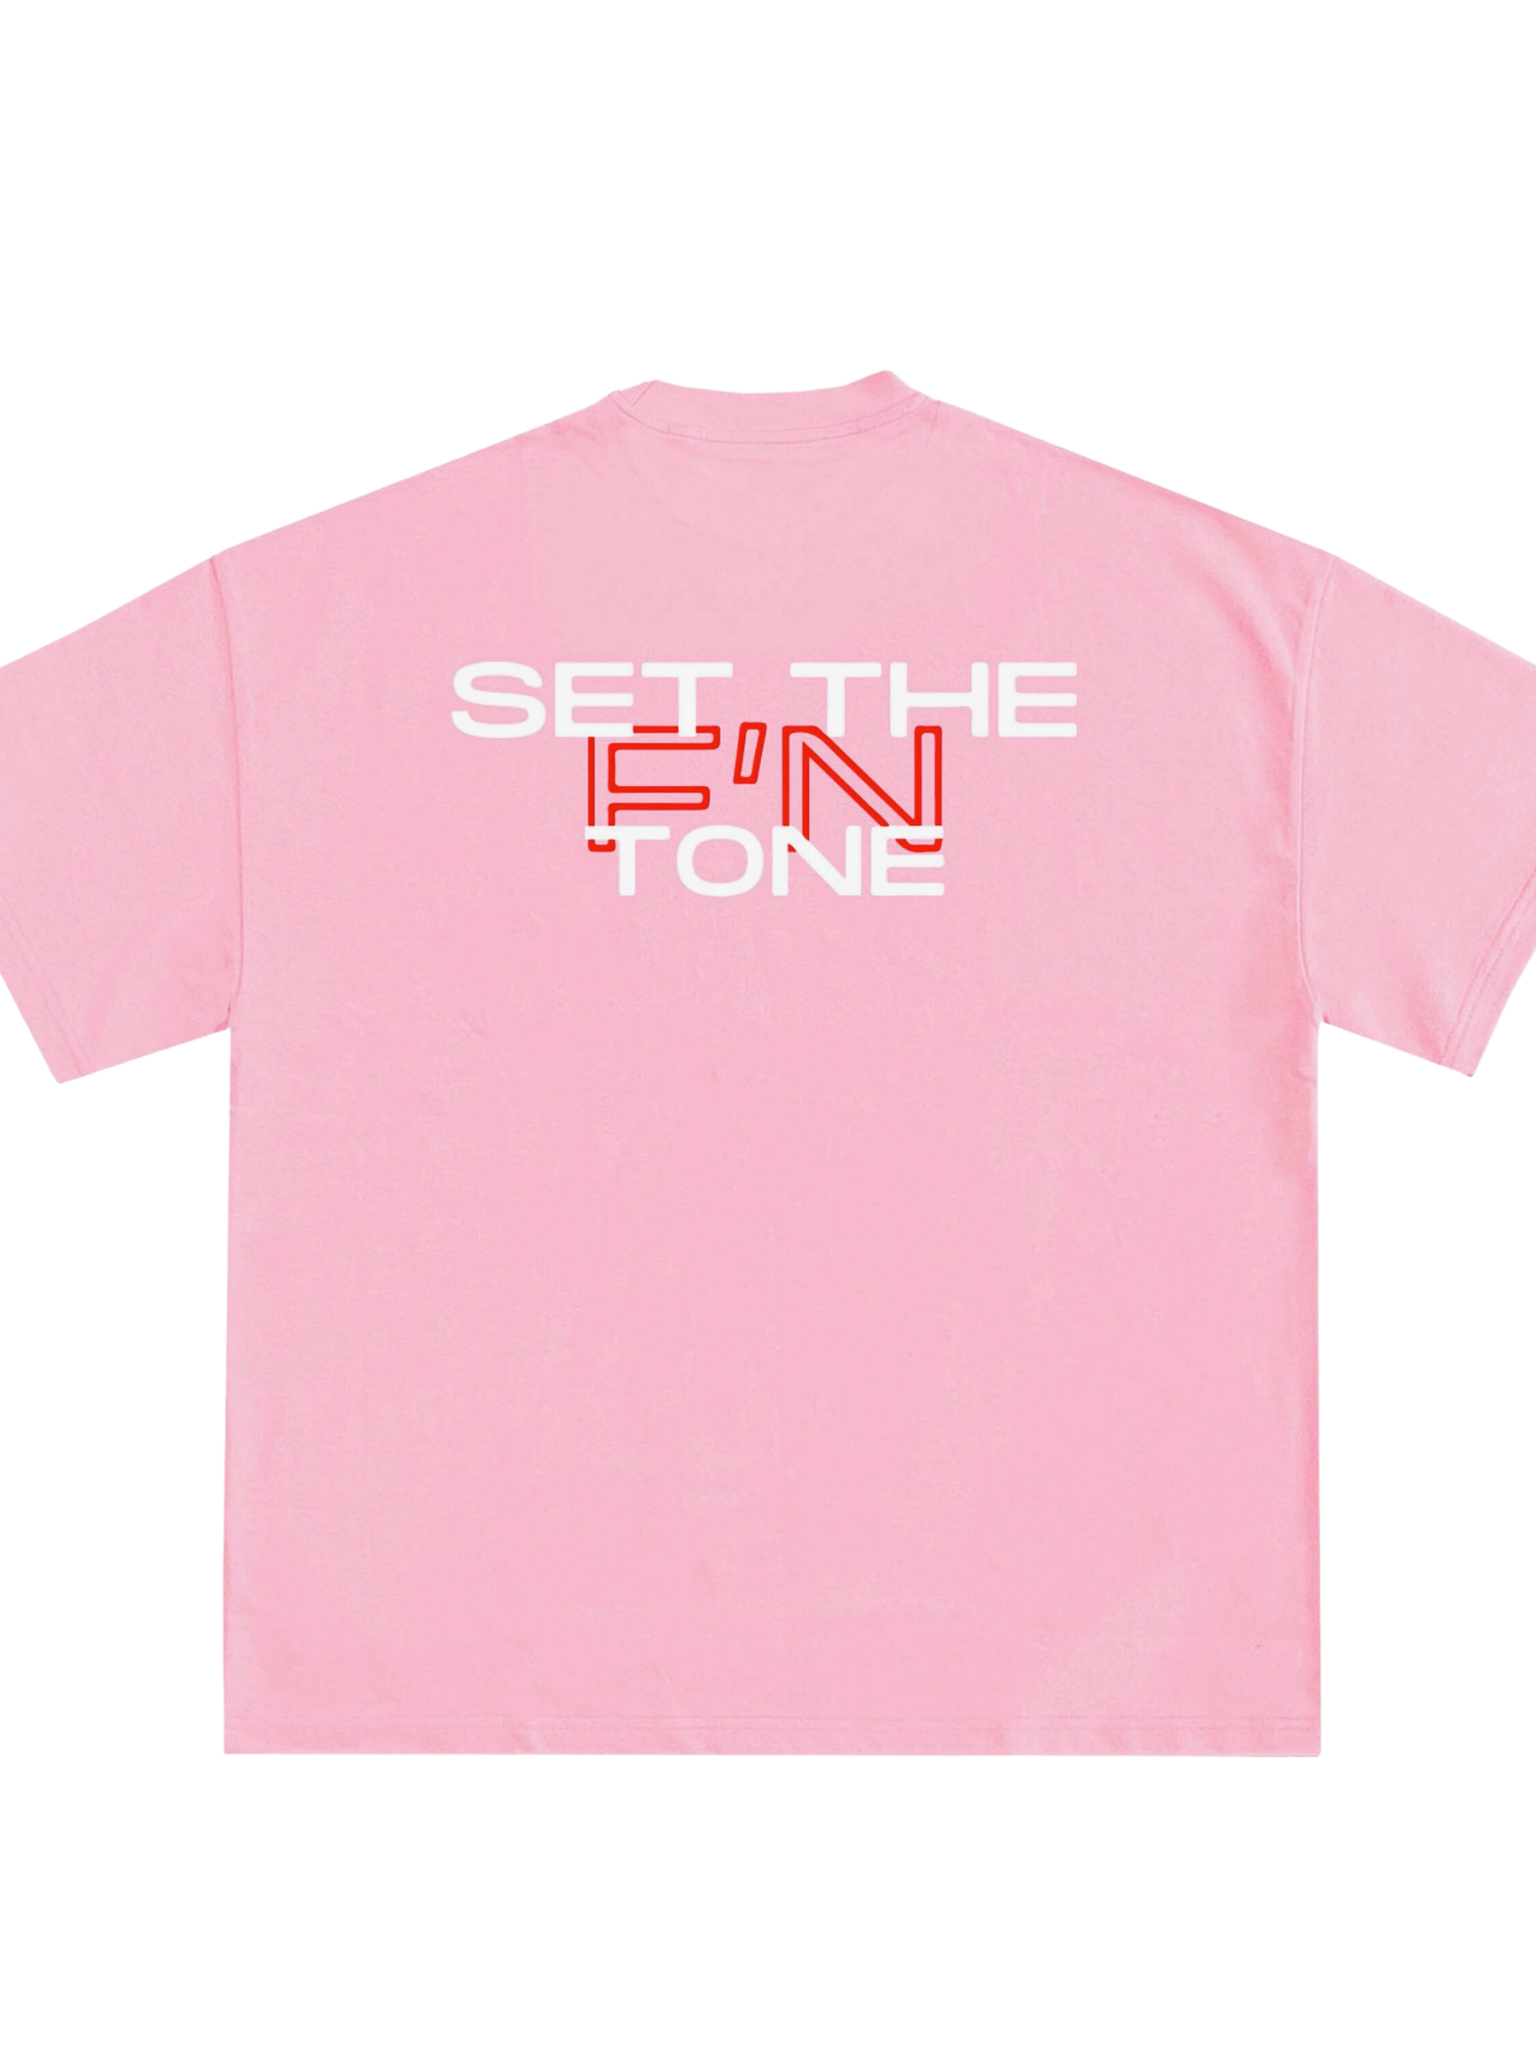 STT Blush Pink T-Shirt/Crop Top